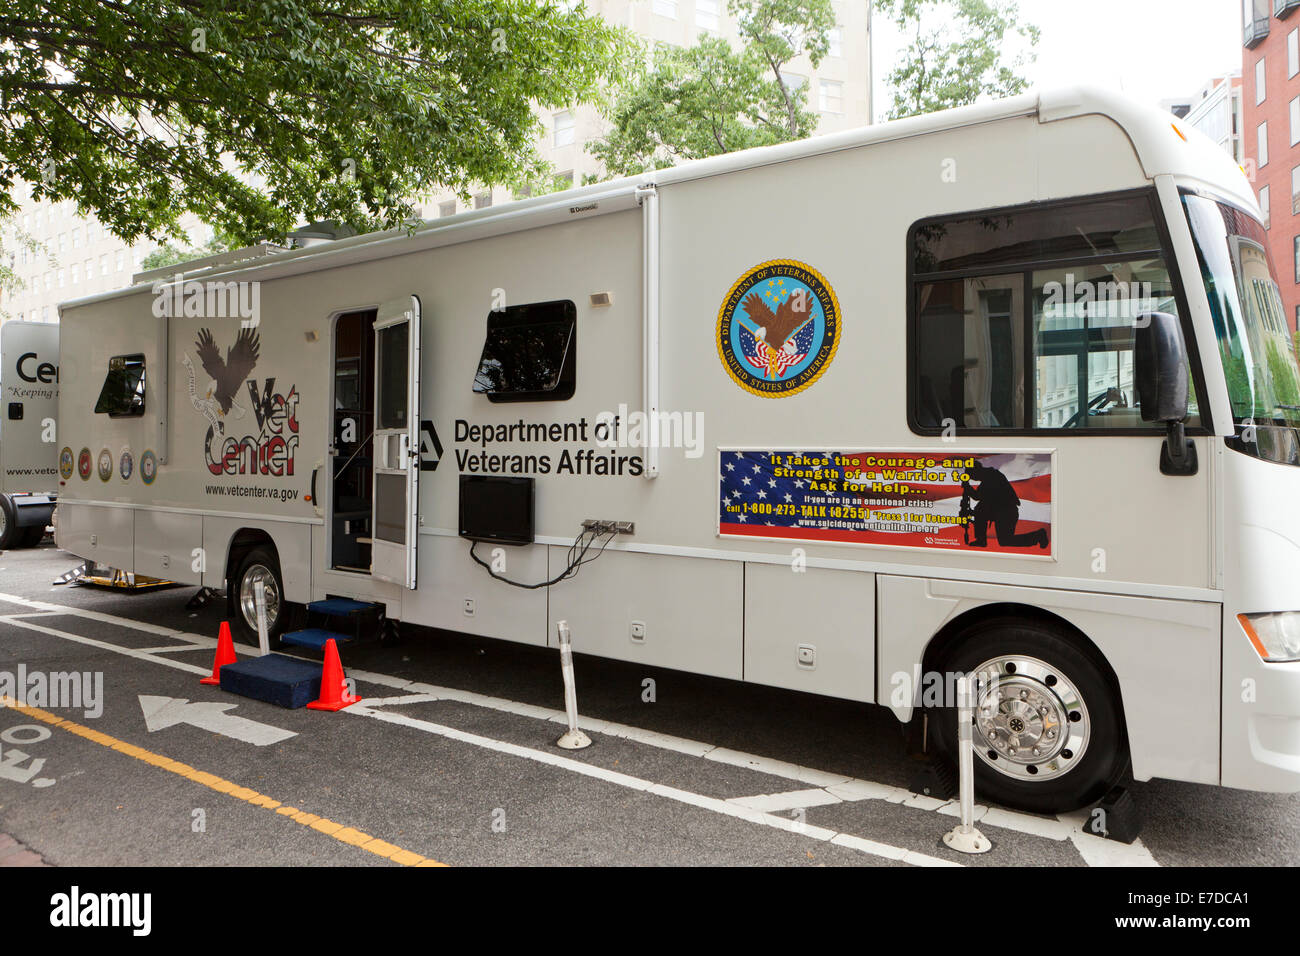 Noi reparto degli affari di veterani Mobile Centro veterinario - Washington DC, Stati Uniti d'America Foto Stock